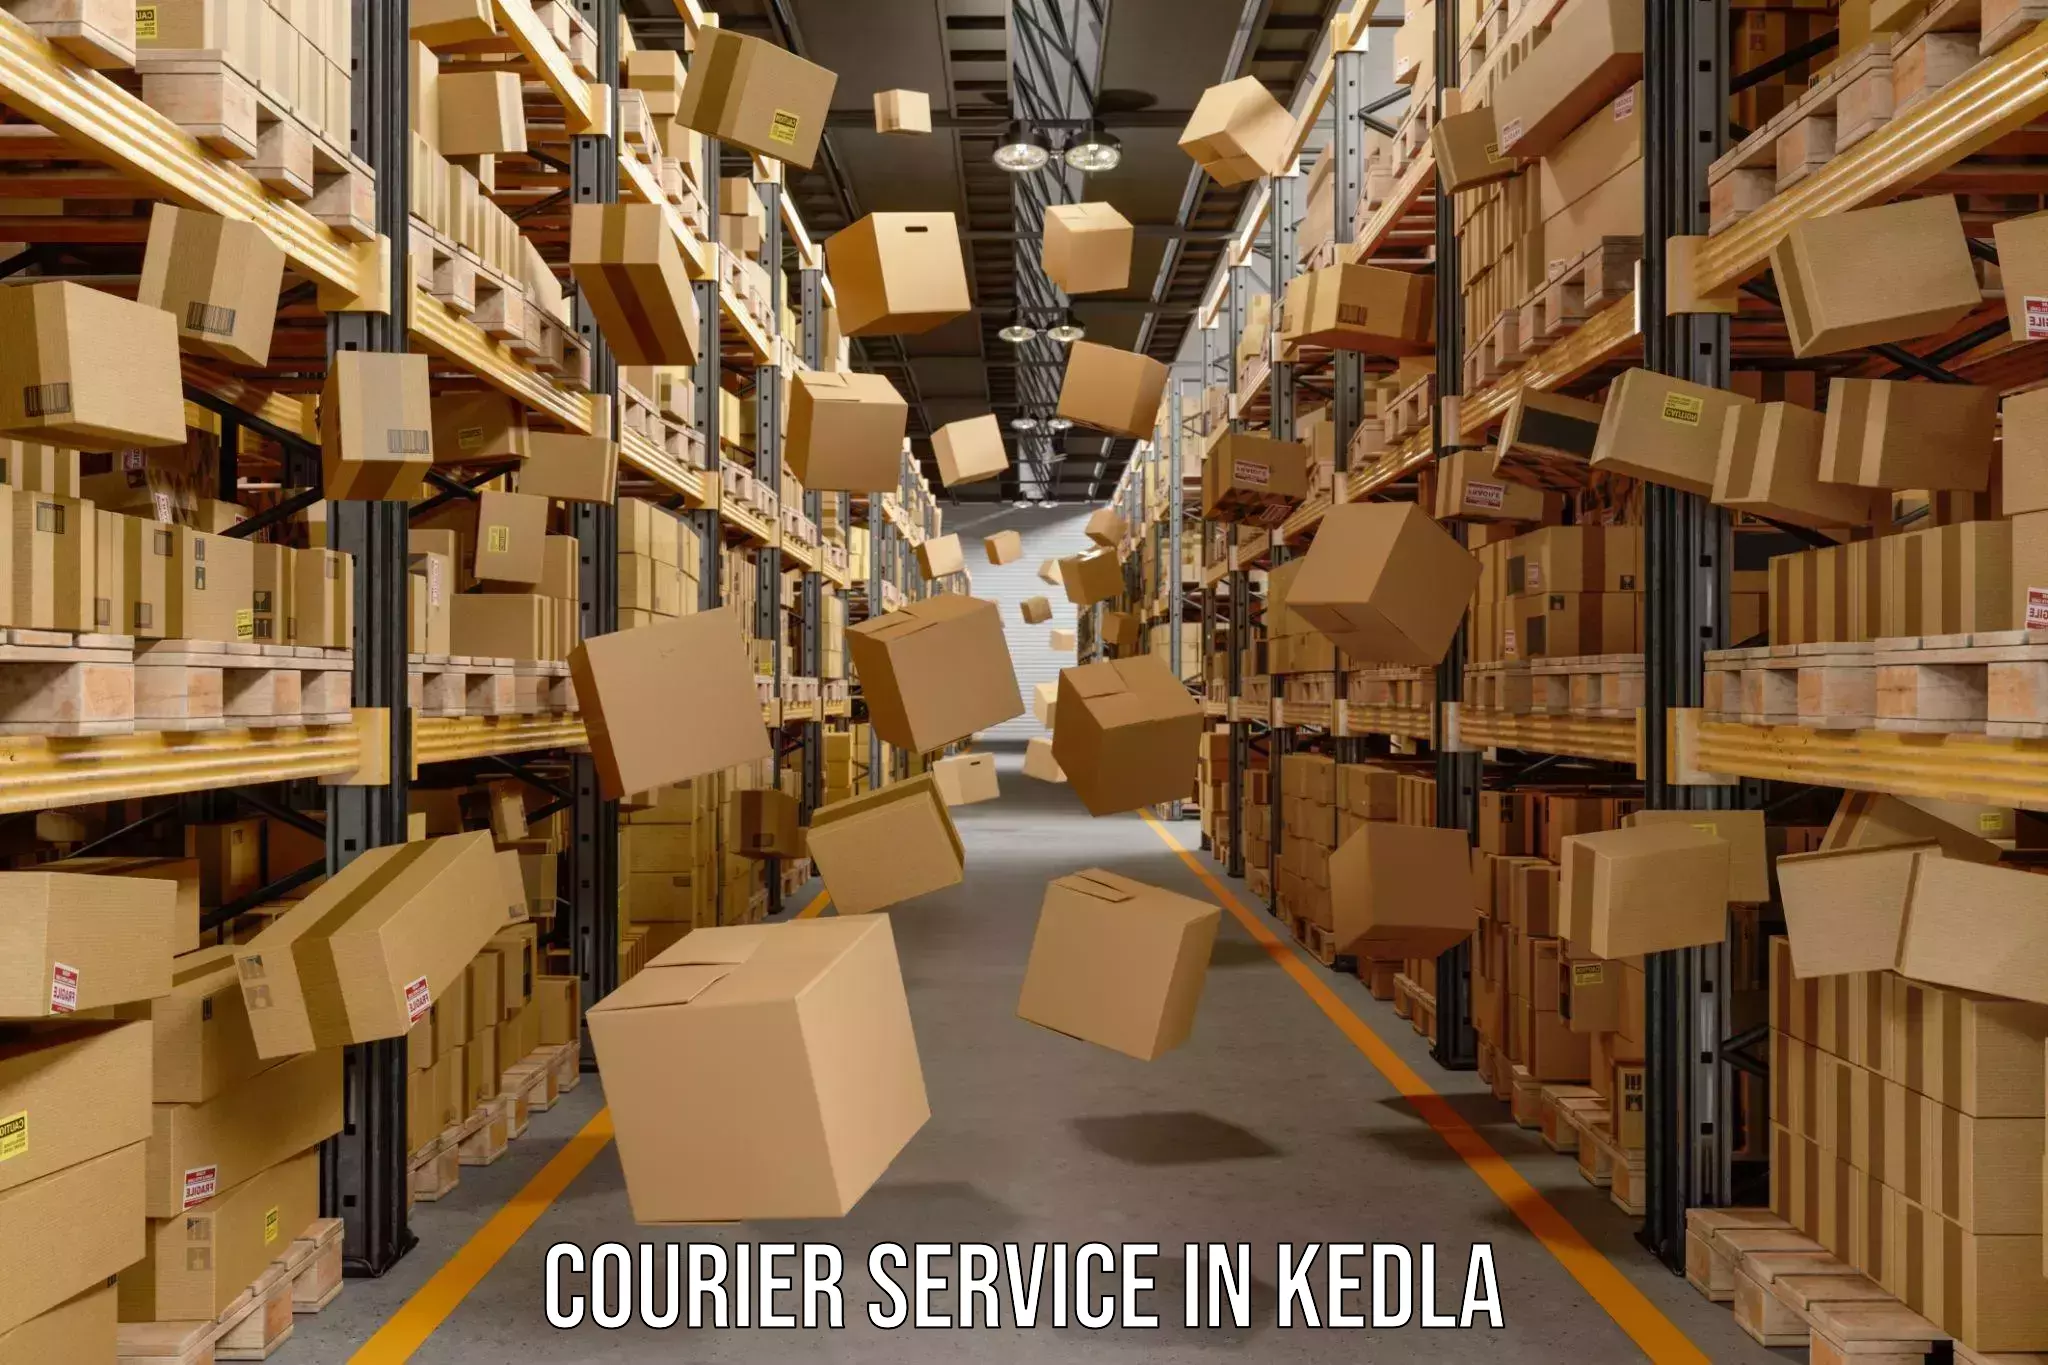 High value parcel delivery in Kedla